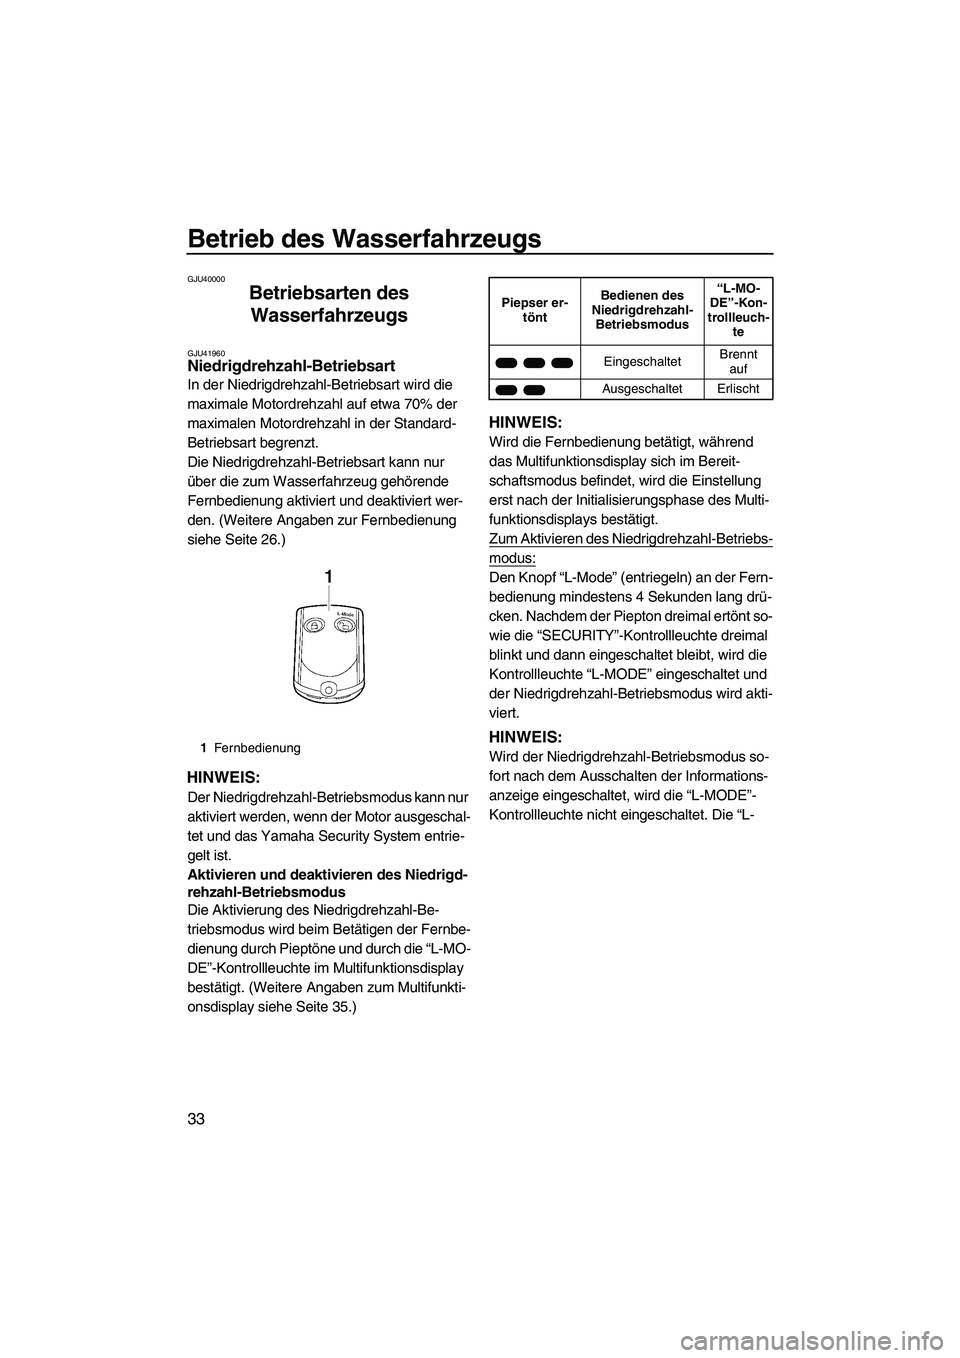 YAMAHA VXR 2013  Betriebsanleitungen (in German) Betrieb des Wasserfahrzeugs
33
GJU40000
Betriebsarten des Wasserfahrzeugs 
GJU41960Niedrigdrehzahl-Betriebsart 
In der Niedrigdrehzahl-Betriebsart wird die 
maximale Motordrehzahl auf etwa 70% der 
ma